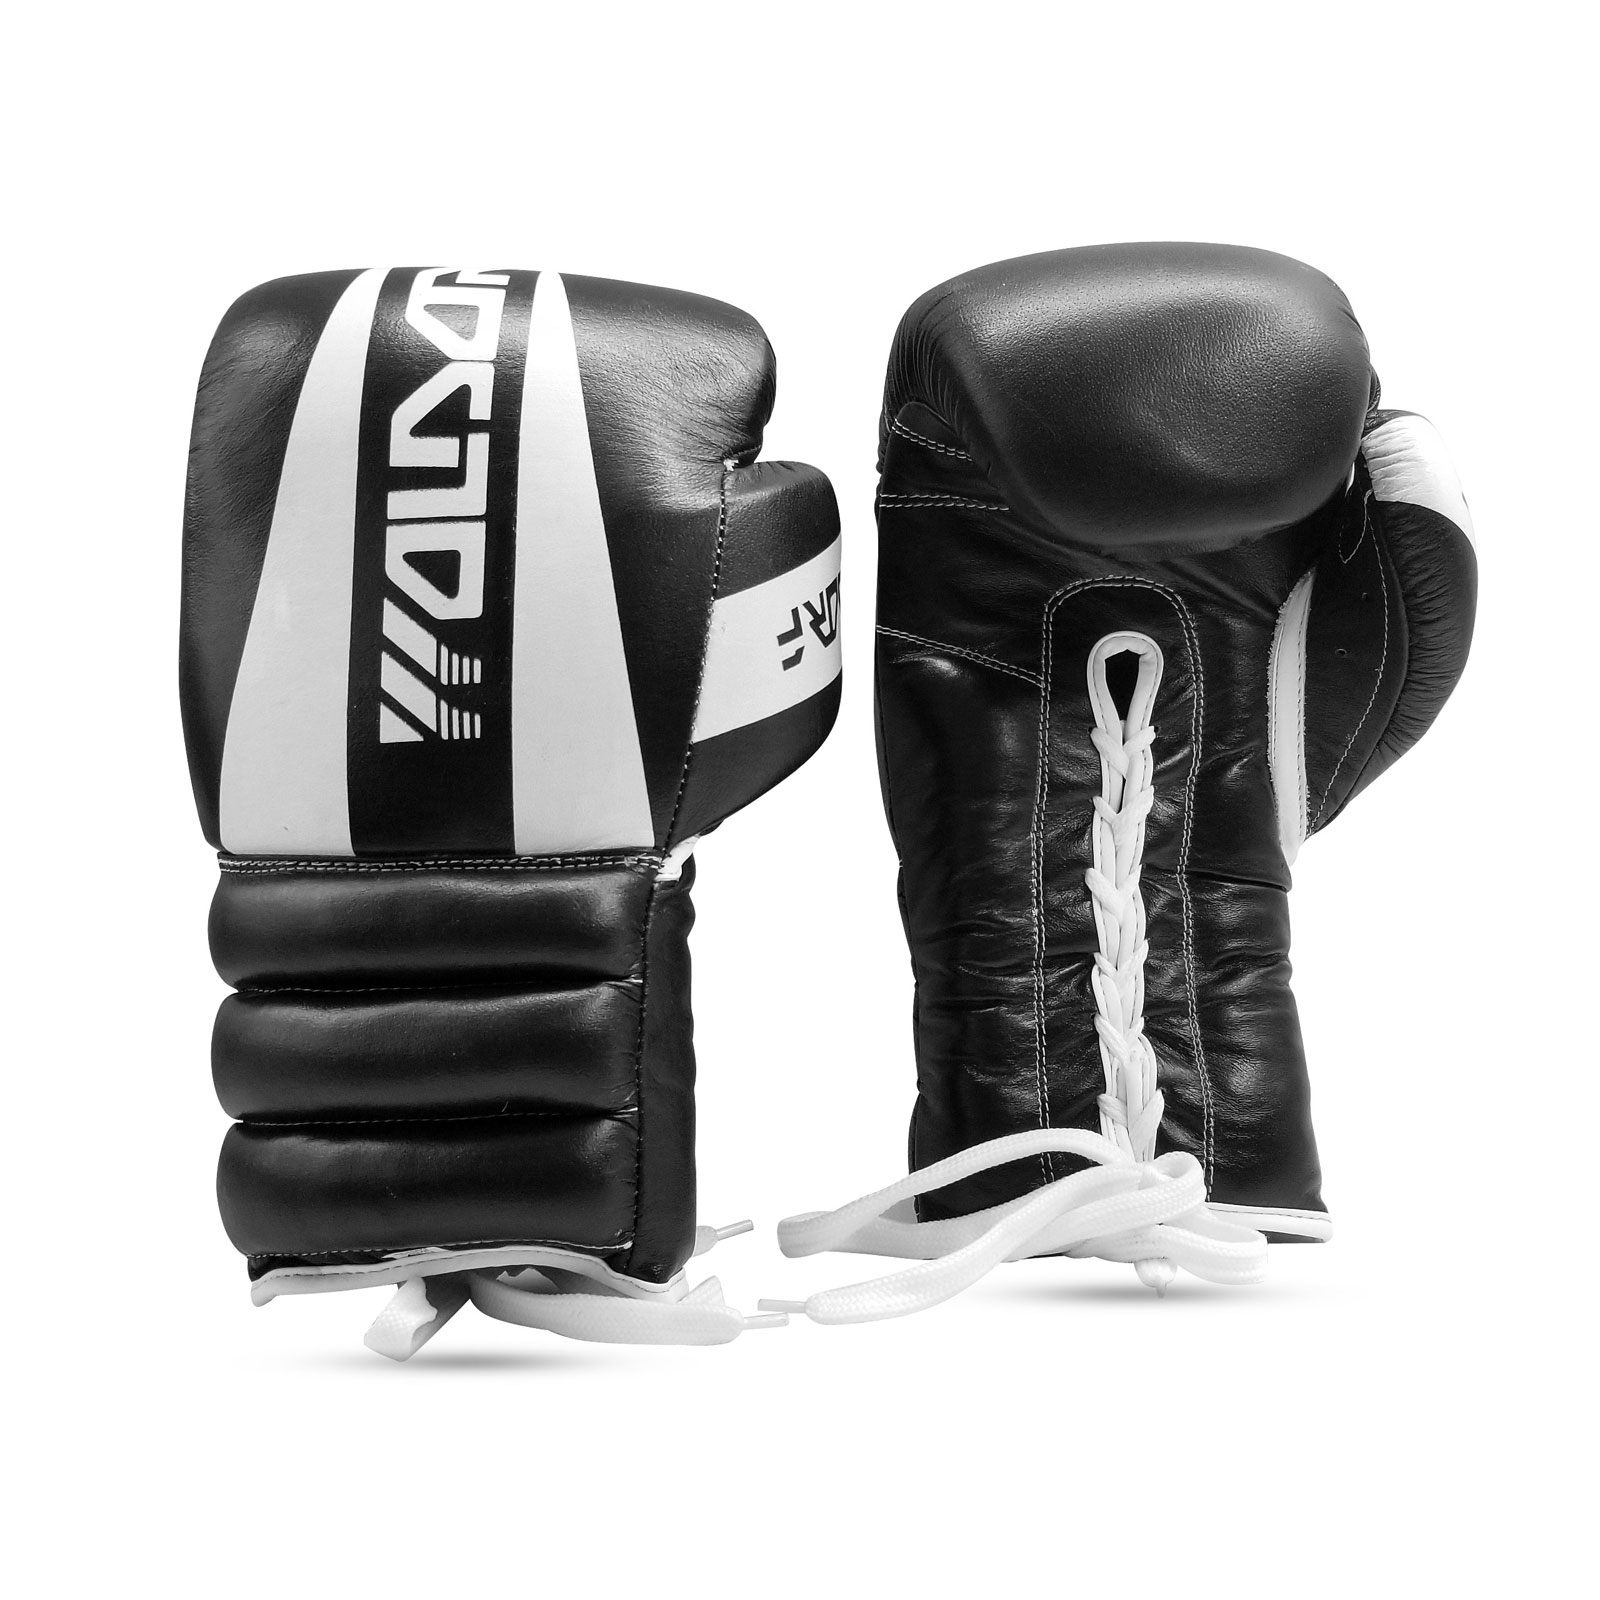 Woldorf USA Boxing gloves punching bag training fighting kickboxing sport pink 